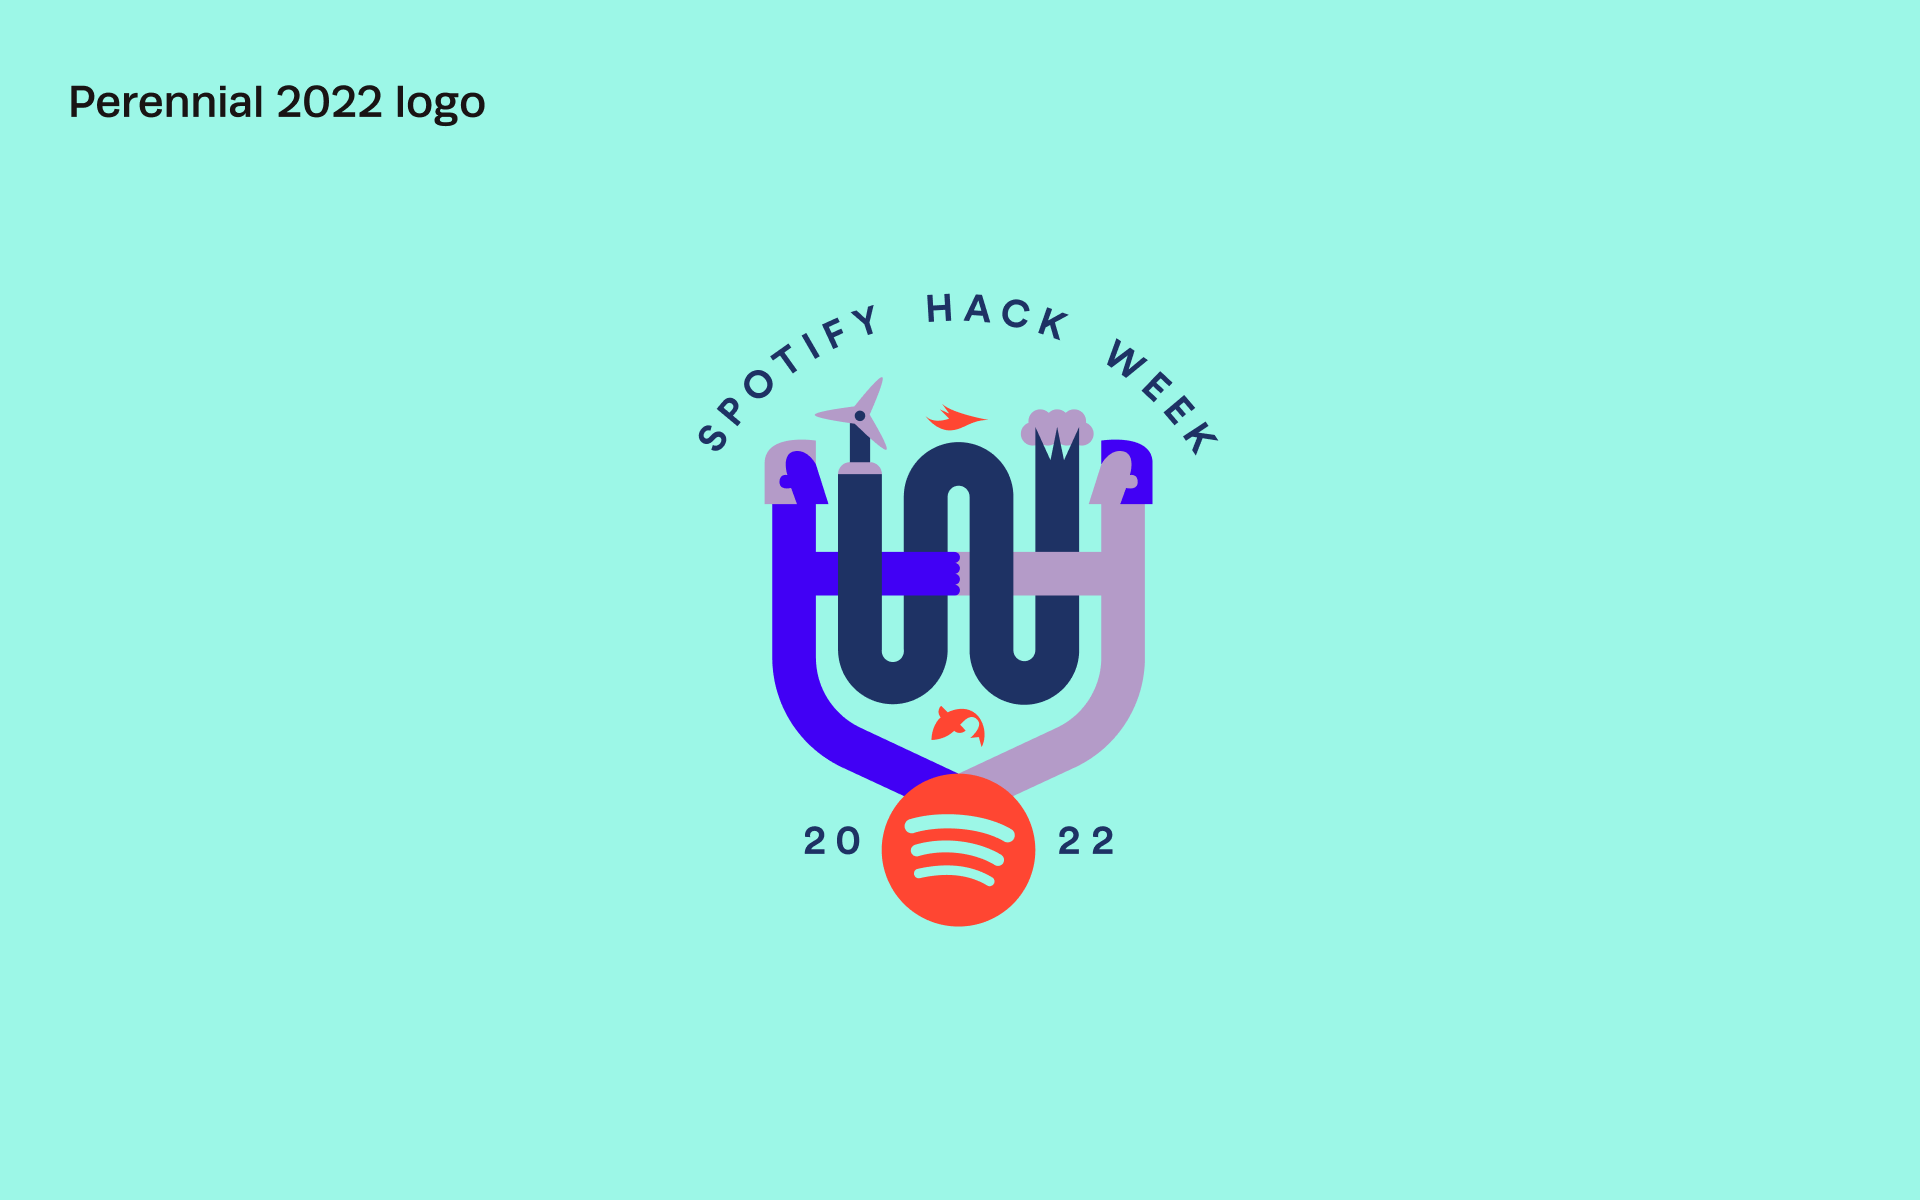 spotify-hack-week-1920×1200-6